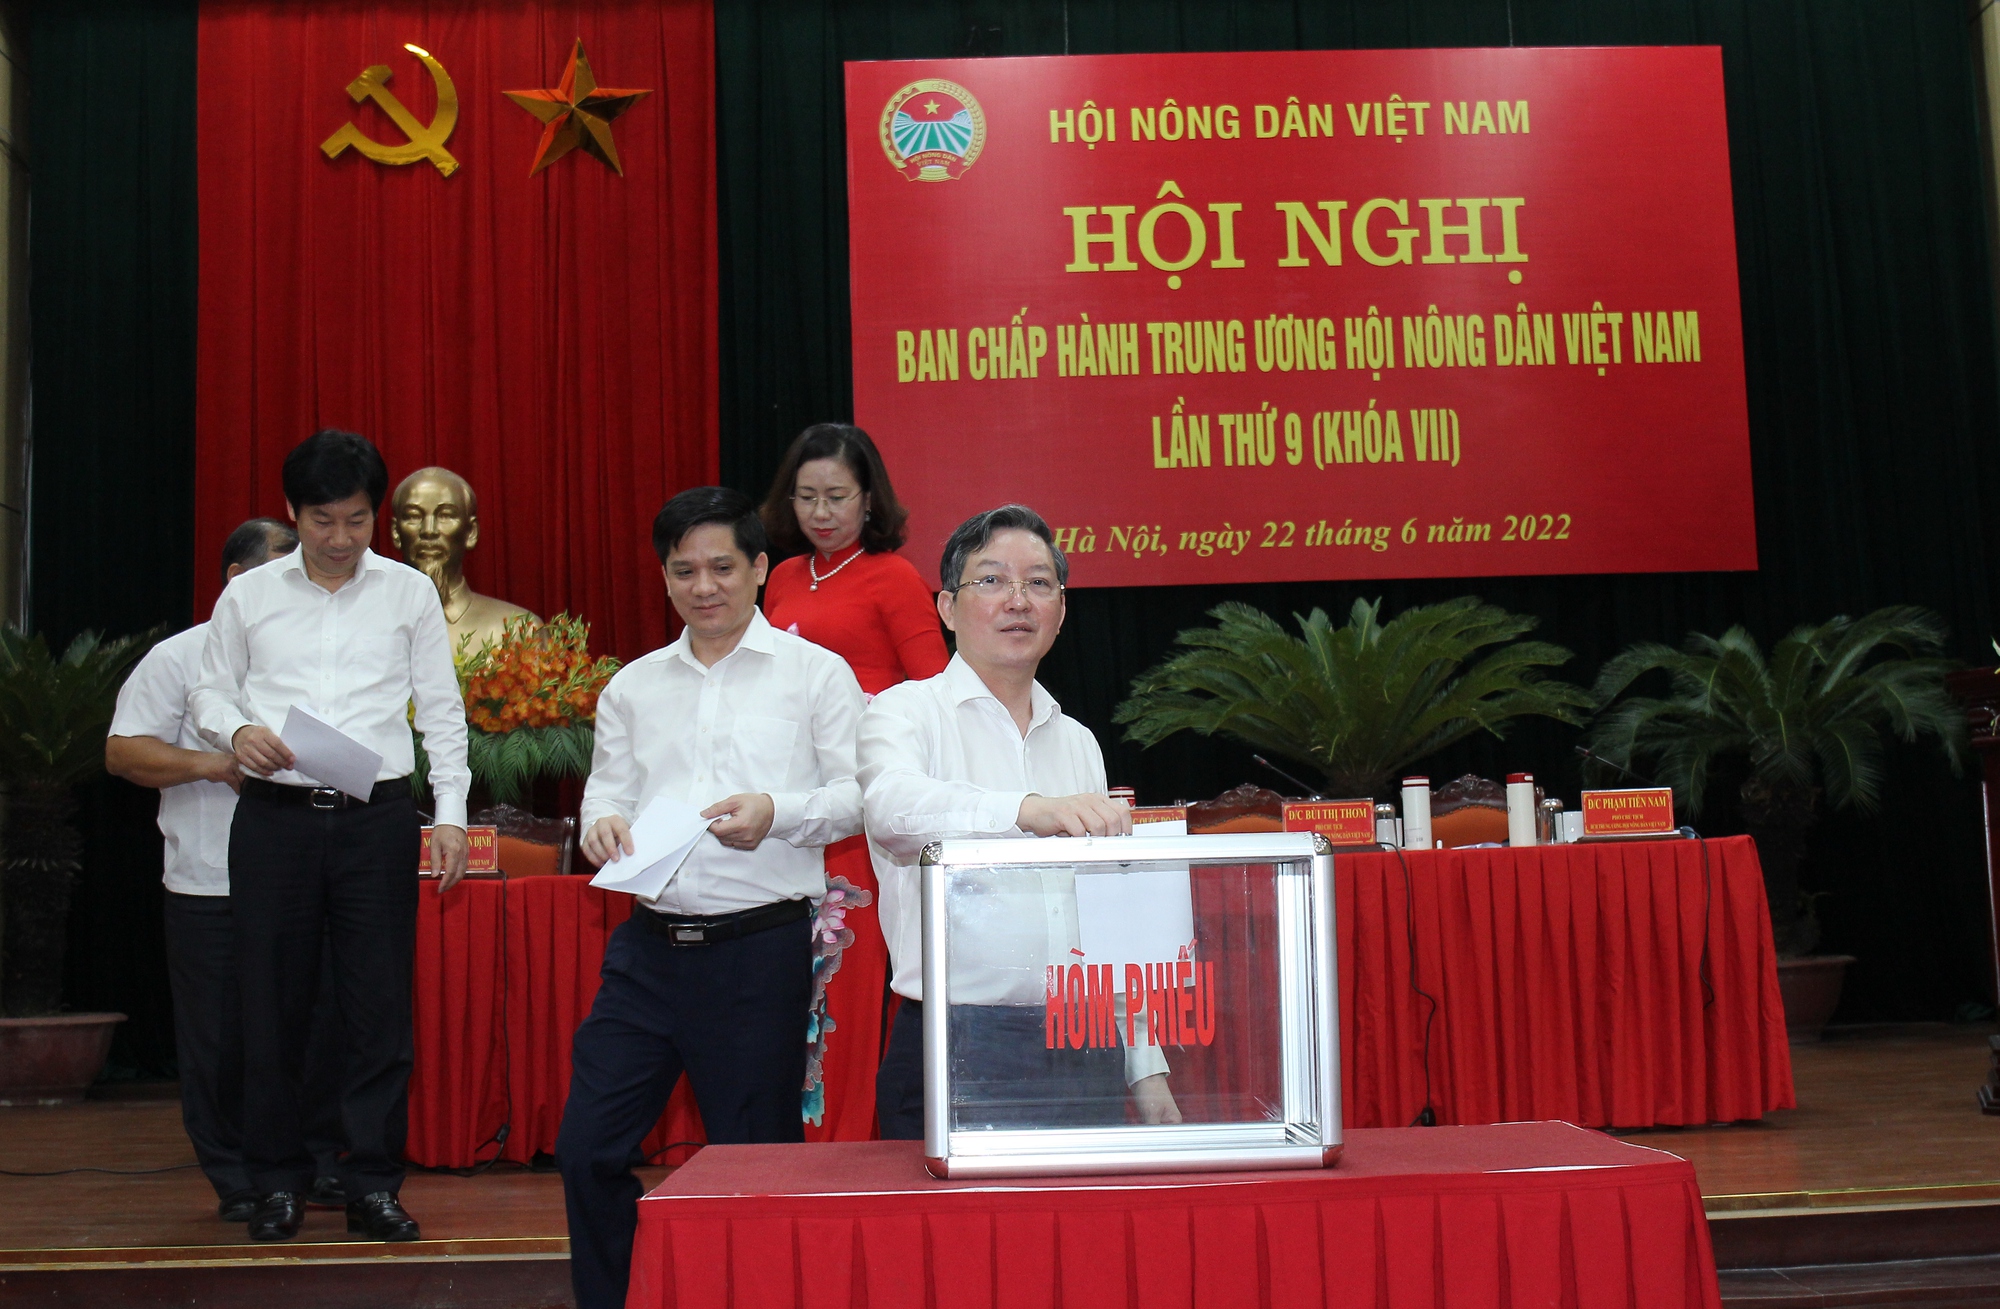 Tin mới: Bà Cao Xuân Thu Vân được bầu làm Phó Chủ tịch Ban Chấp hành Trung ương Hội Nông dân Việt Nam - Ảnh 1.